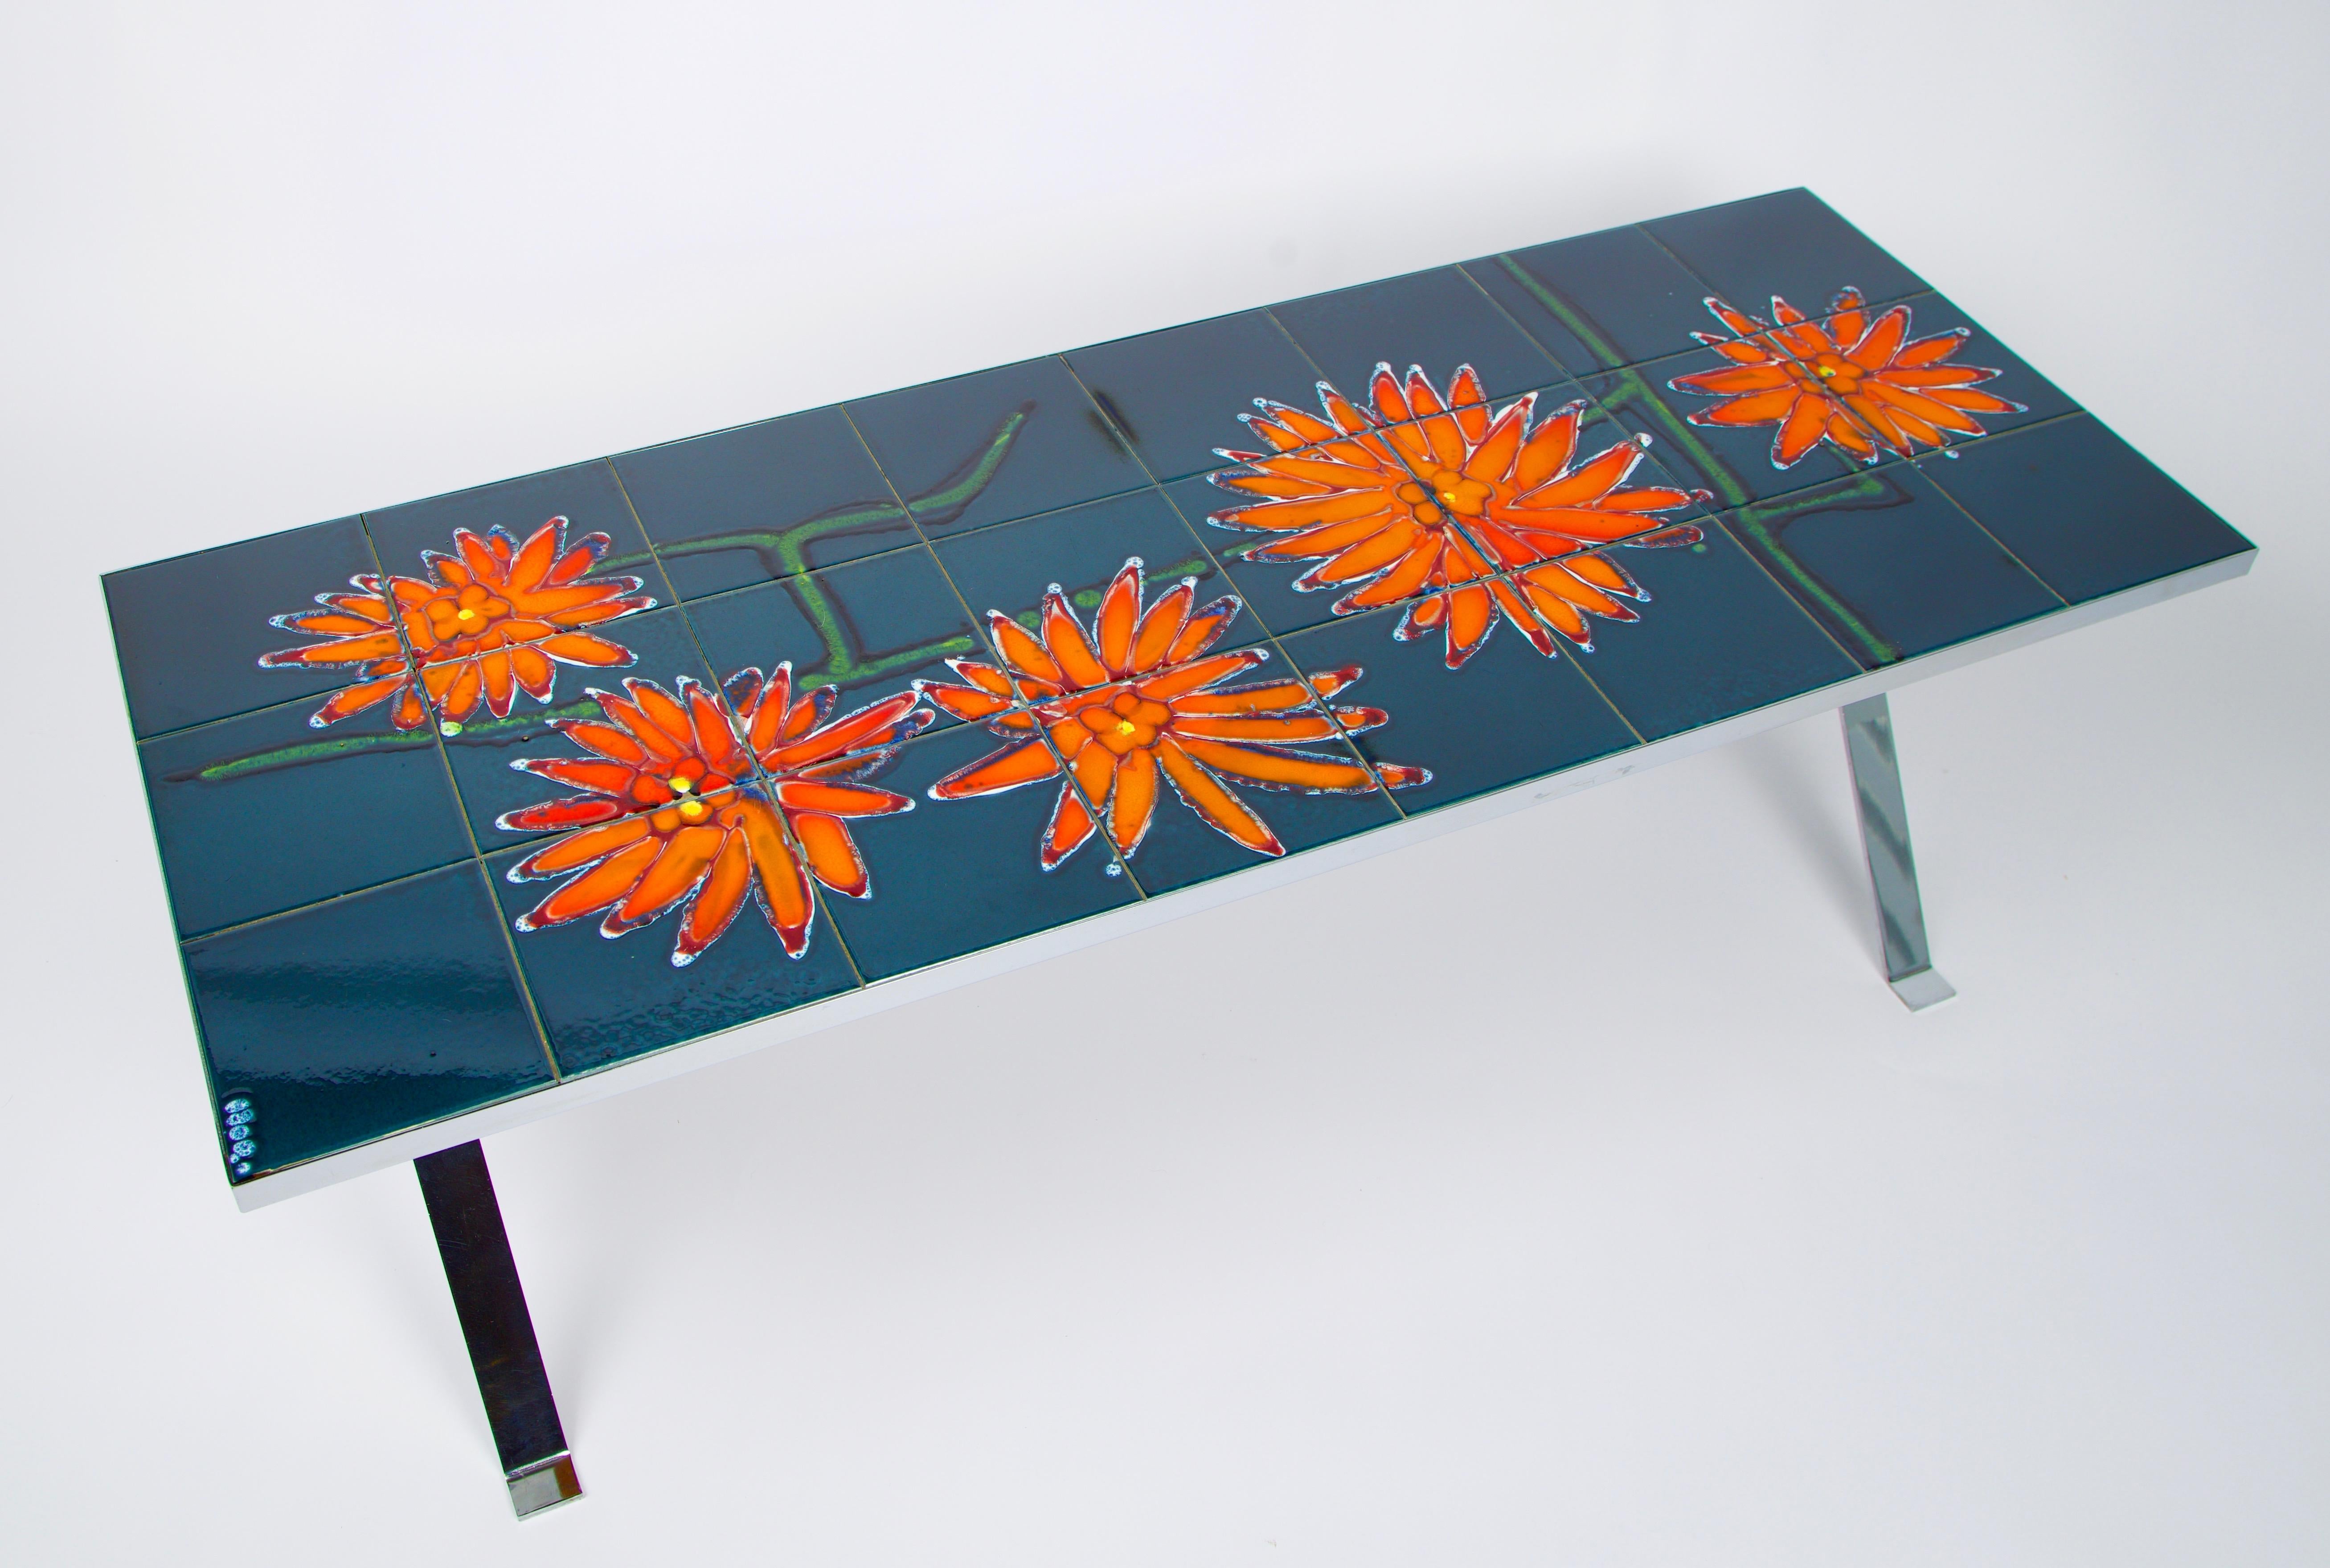 Cette table est fabriquée à partir de carreaux de céramique bleus peints à la main et ornés d'un motif floral abstrait orange vif. Les carreaux reposent sur une base chromée soutenue par un châssis en teck.  Il a été fabriqué et signé par ADRI